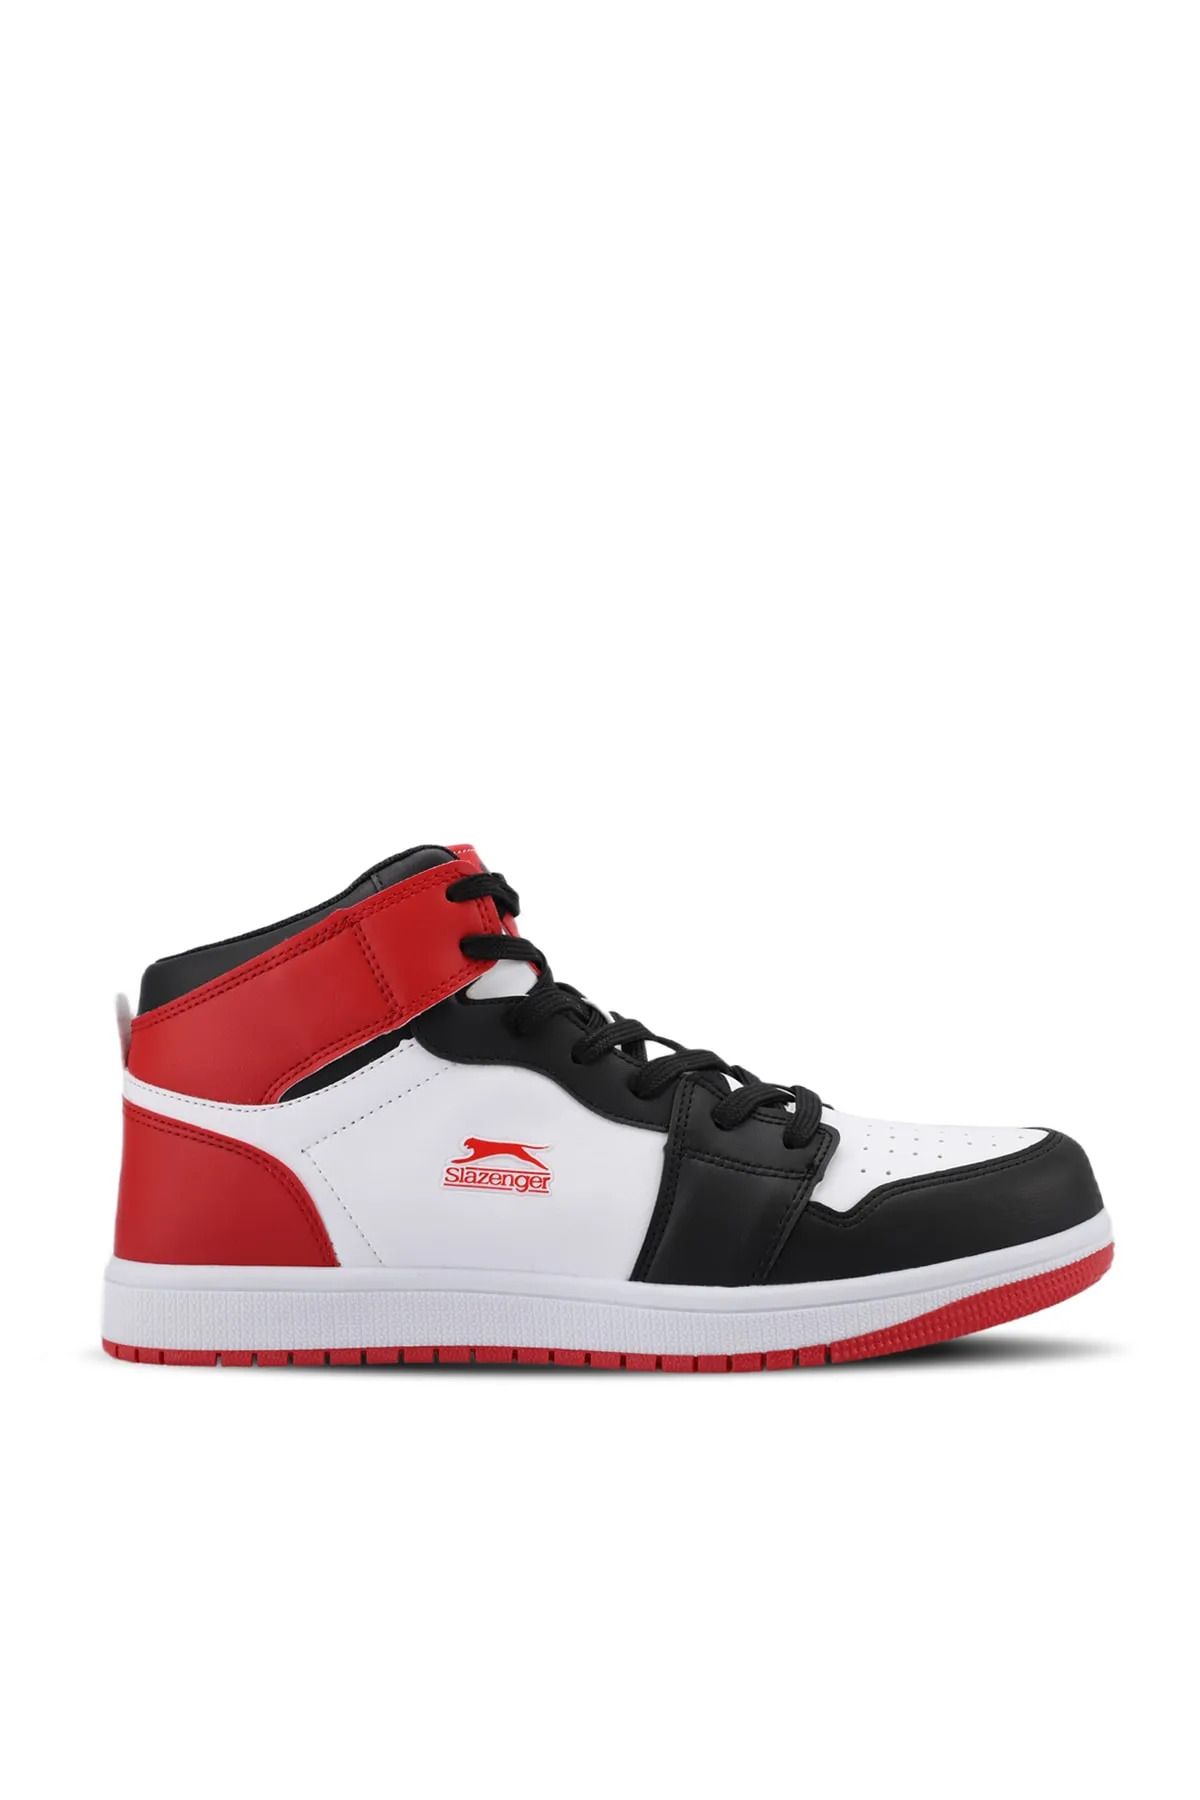 Slazenger LABOR HIGH Sneaker  Ayakkabı Beyaz-Kırmızı SA23LK002